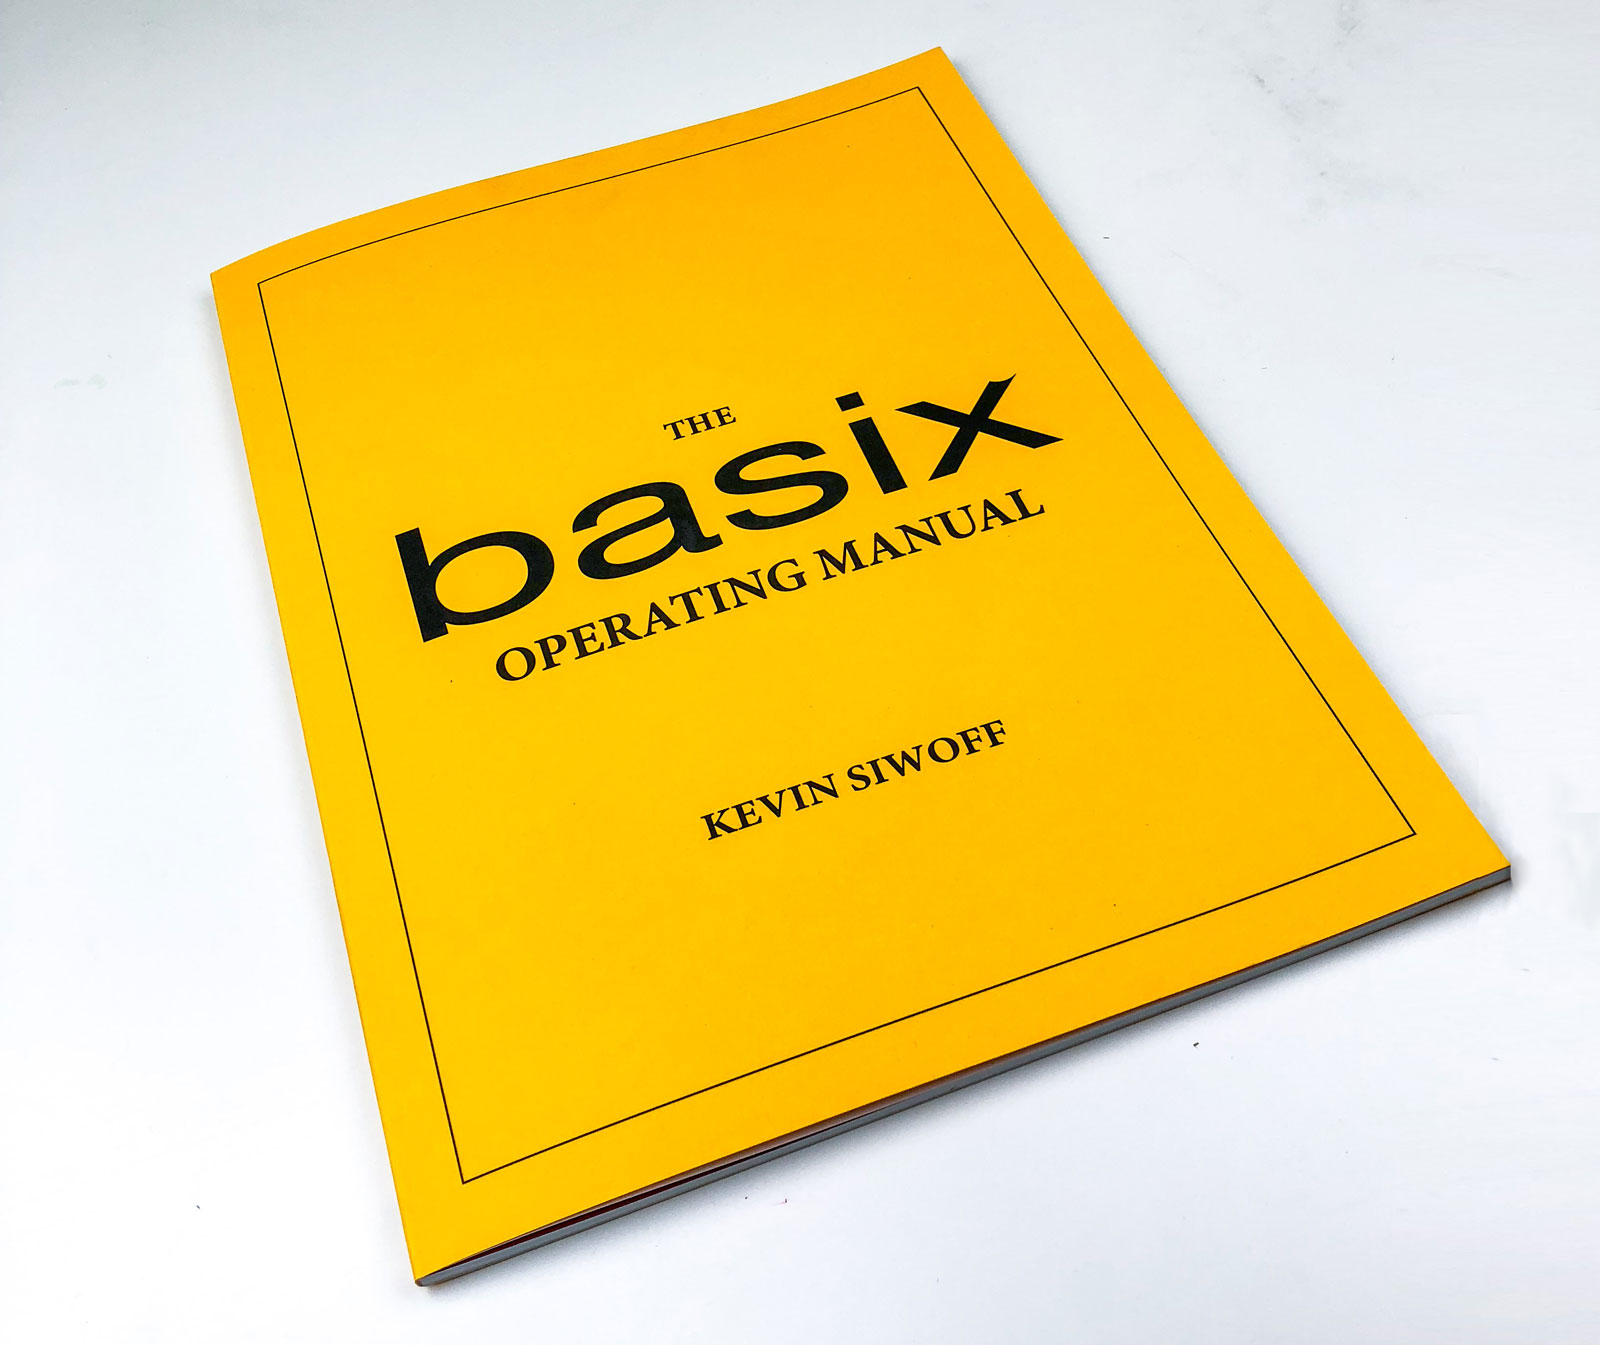 Basix Operating Manual